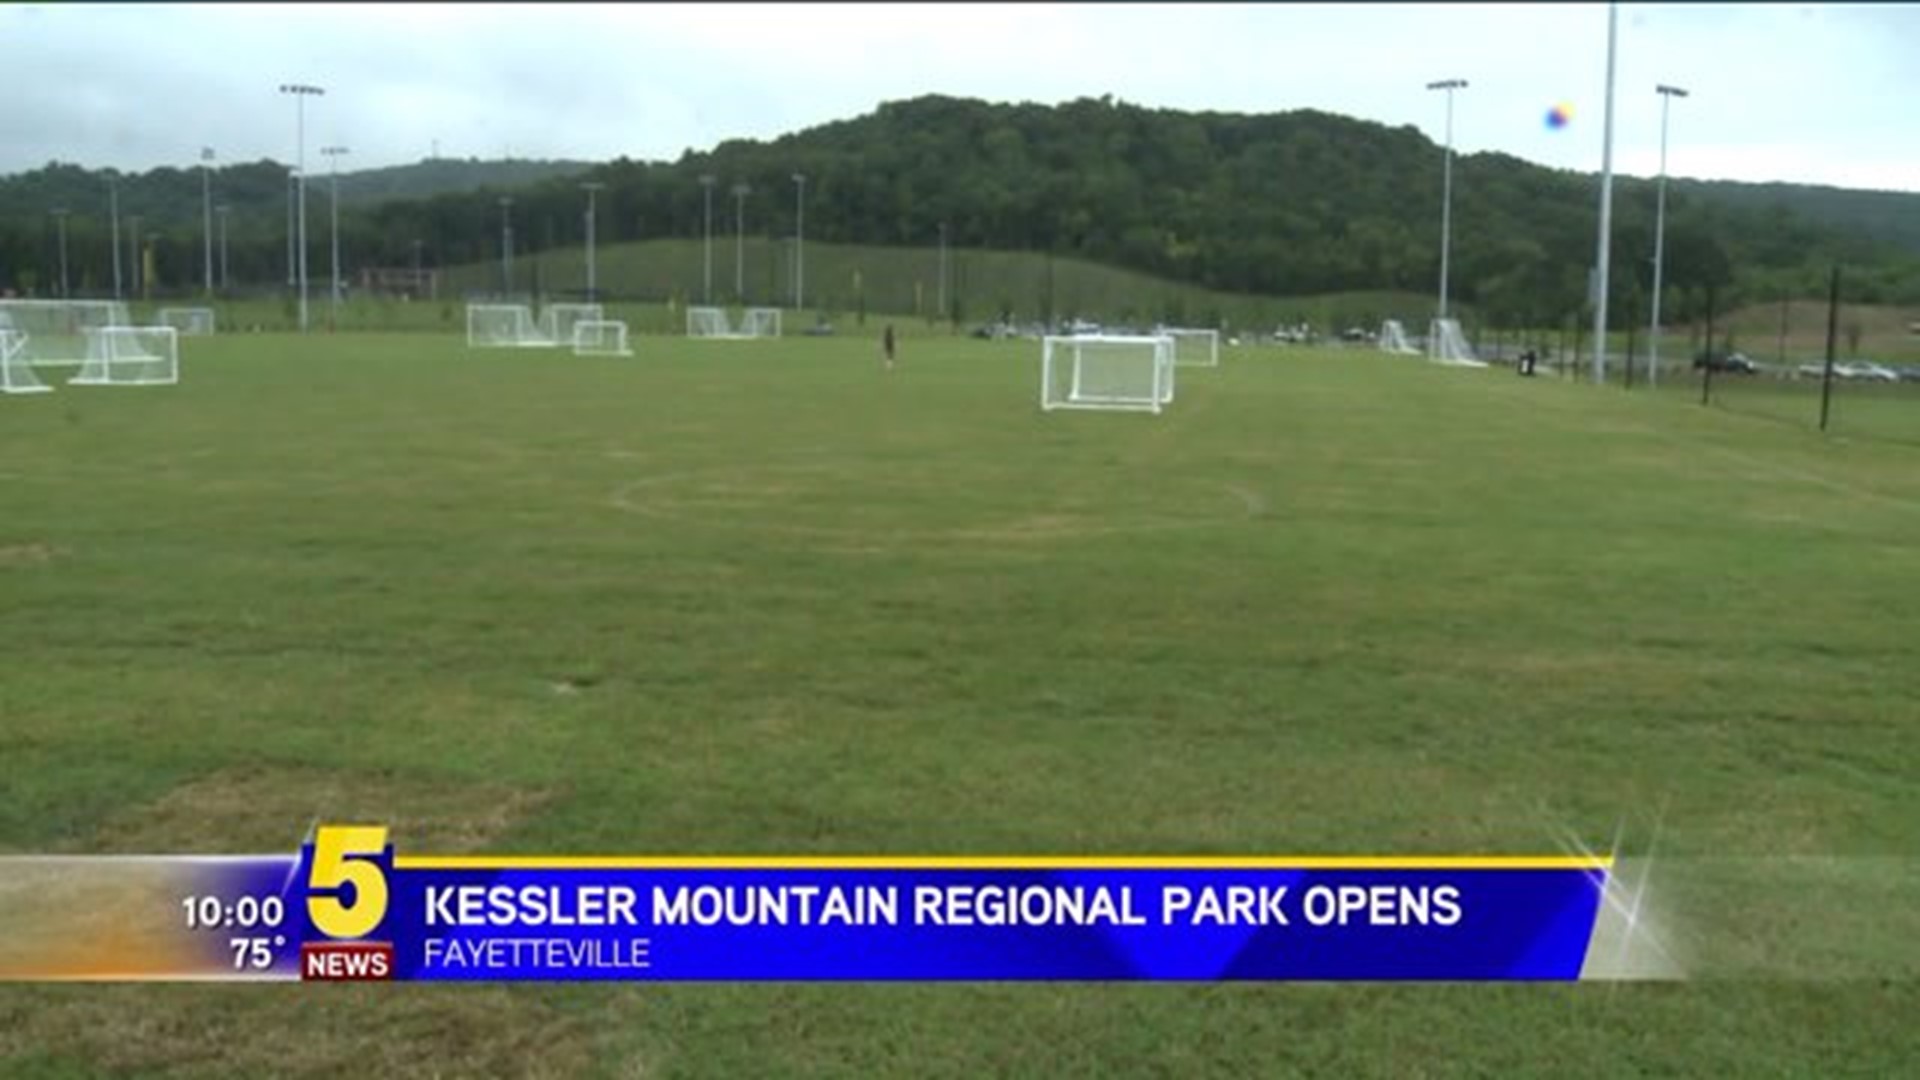 KESSLER MOUNTAIN REGIONAL PARK OPENS